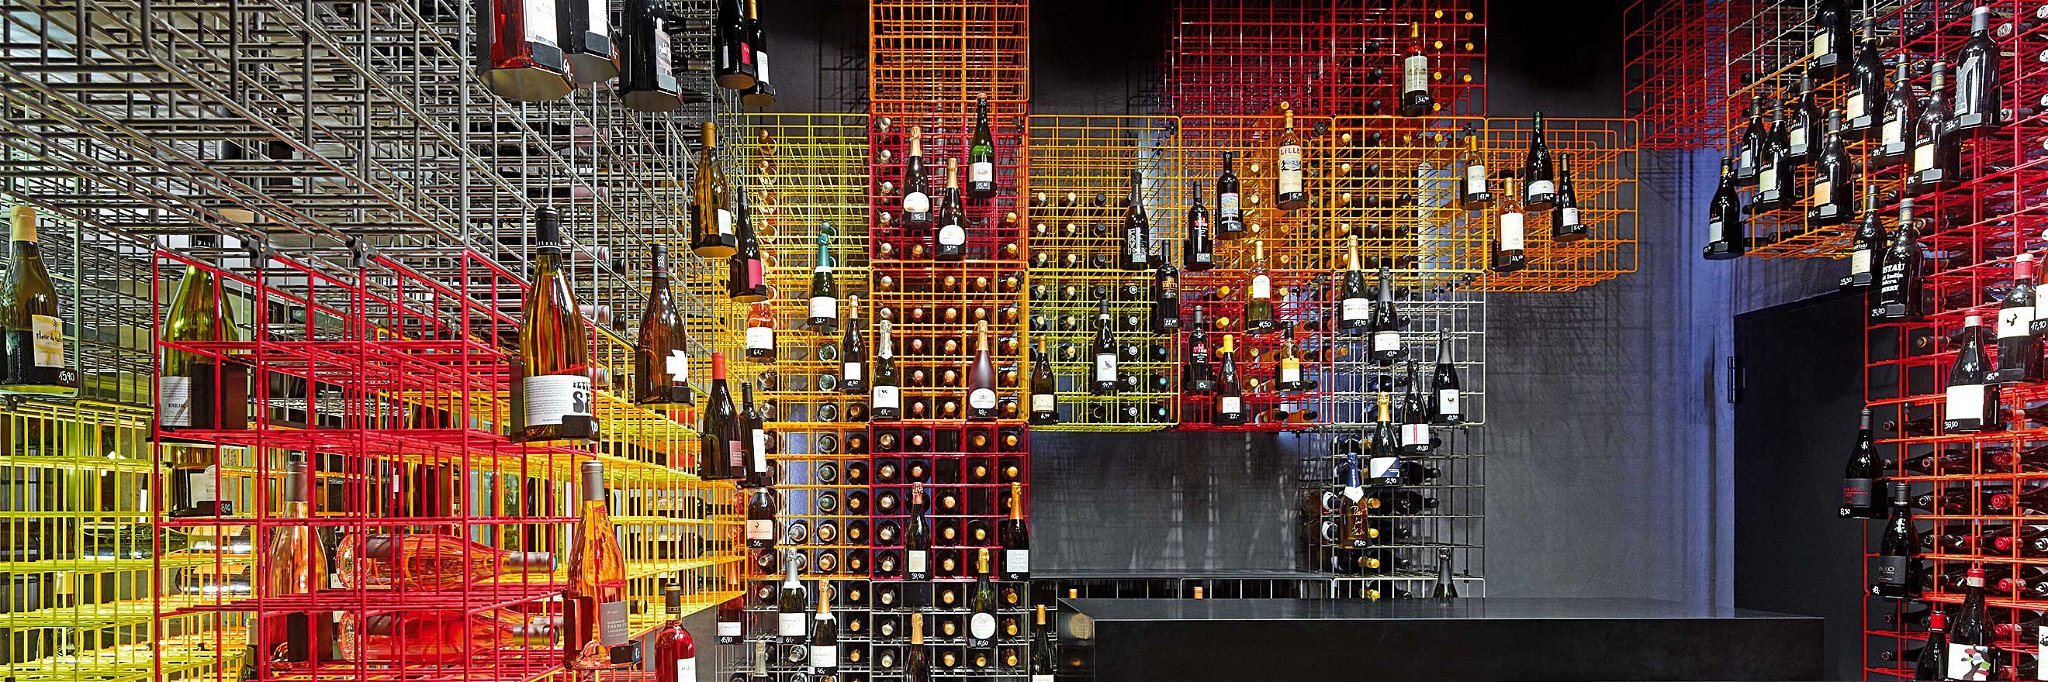 Weinhandlung Kreis, Stuttgart. Aus dem fehlenden Lagerplatz entstand die Idee dieses modularen Systems.